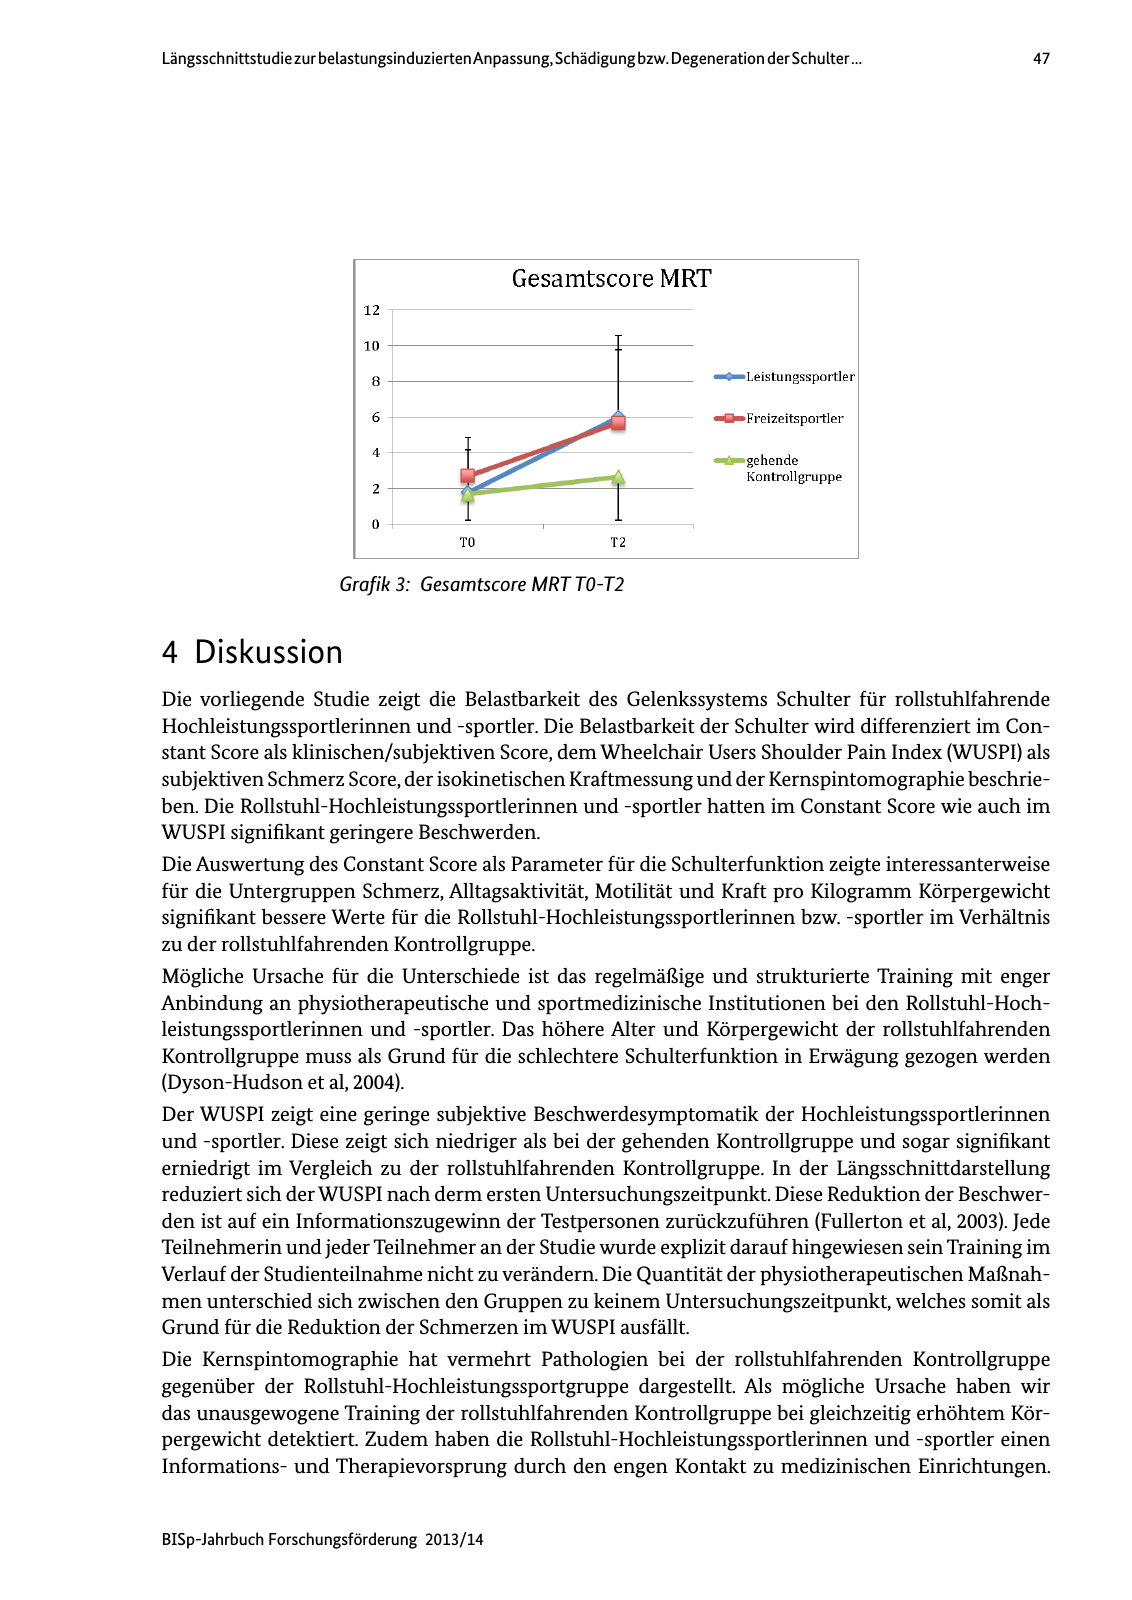 Vorschau BISp-Jahrbuch Forschungsförderung 2013/14 Seite 48